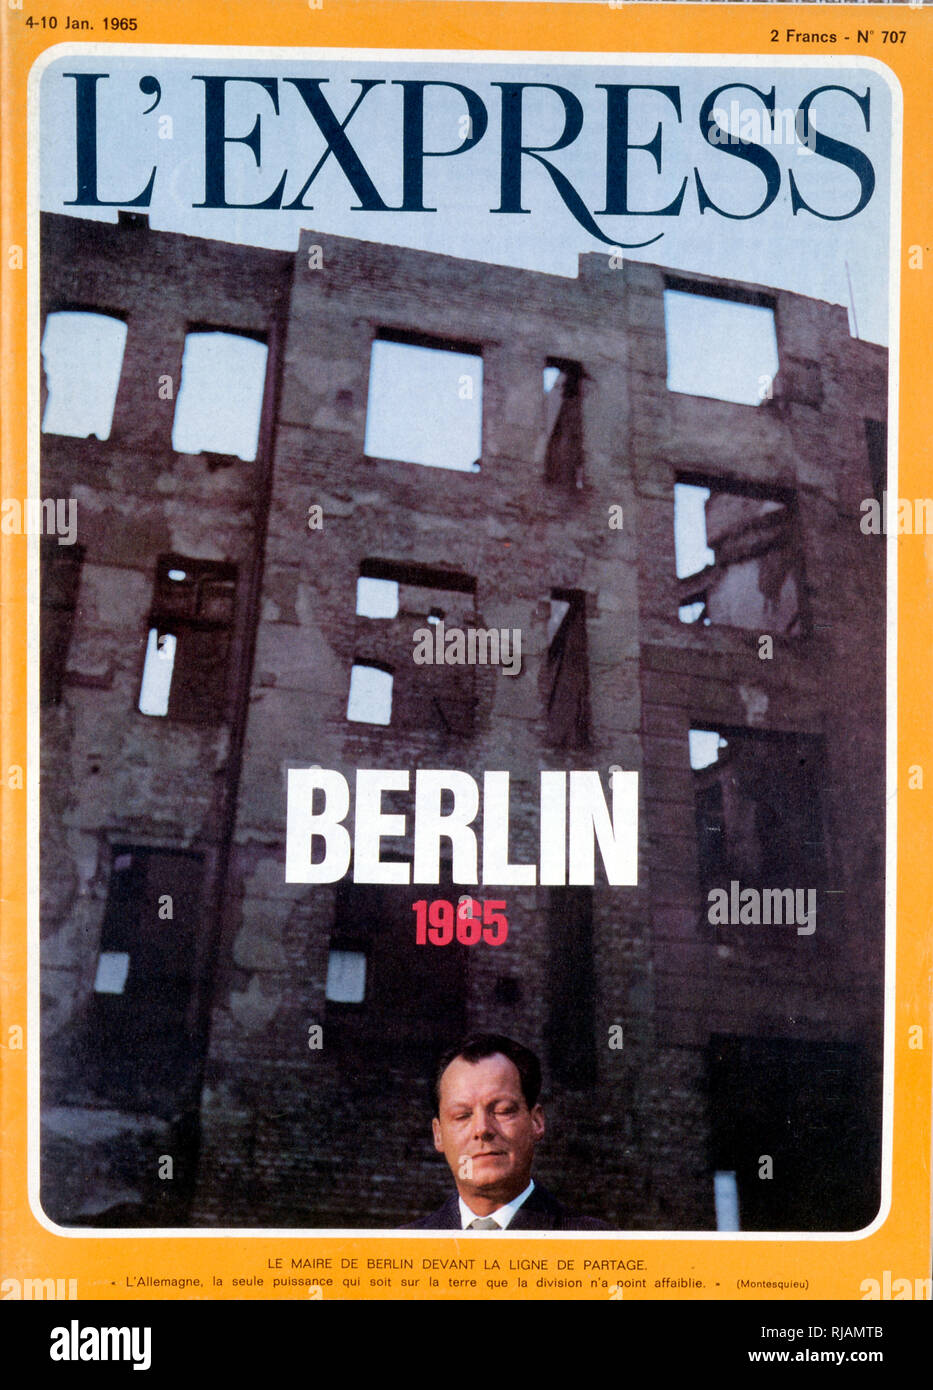 Vordere Abdeckung der Französischen Publikation "L'Express" schildert Willy Brandt (1913-1992), Bürgermeister von West Berlin und später ein wichtiger deutscher Staatsmann, war Führer der Sozialdemokratischen Partei Deutschlands (SPD) von 1964 bis 1987. Er diente als Bundeskanzler der Bundesrepublik Deutschland (West) von 1969 bis 1974 Stockfoto